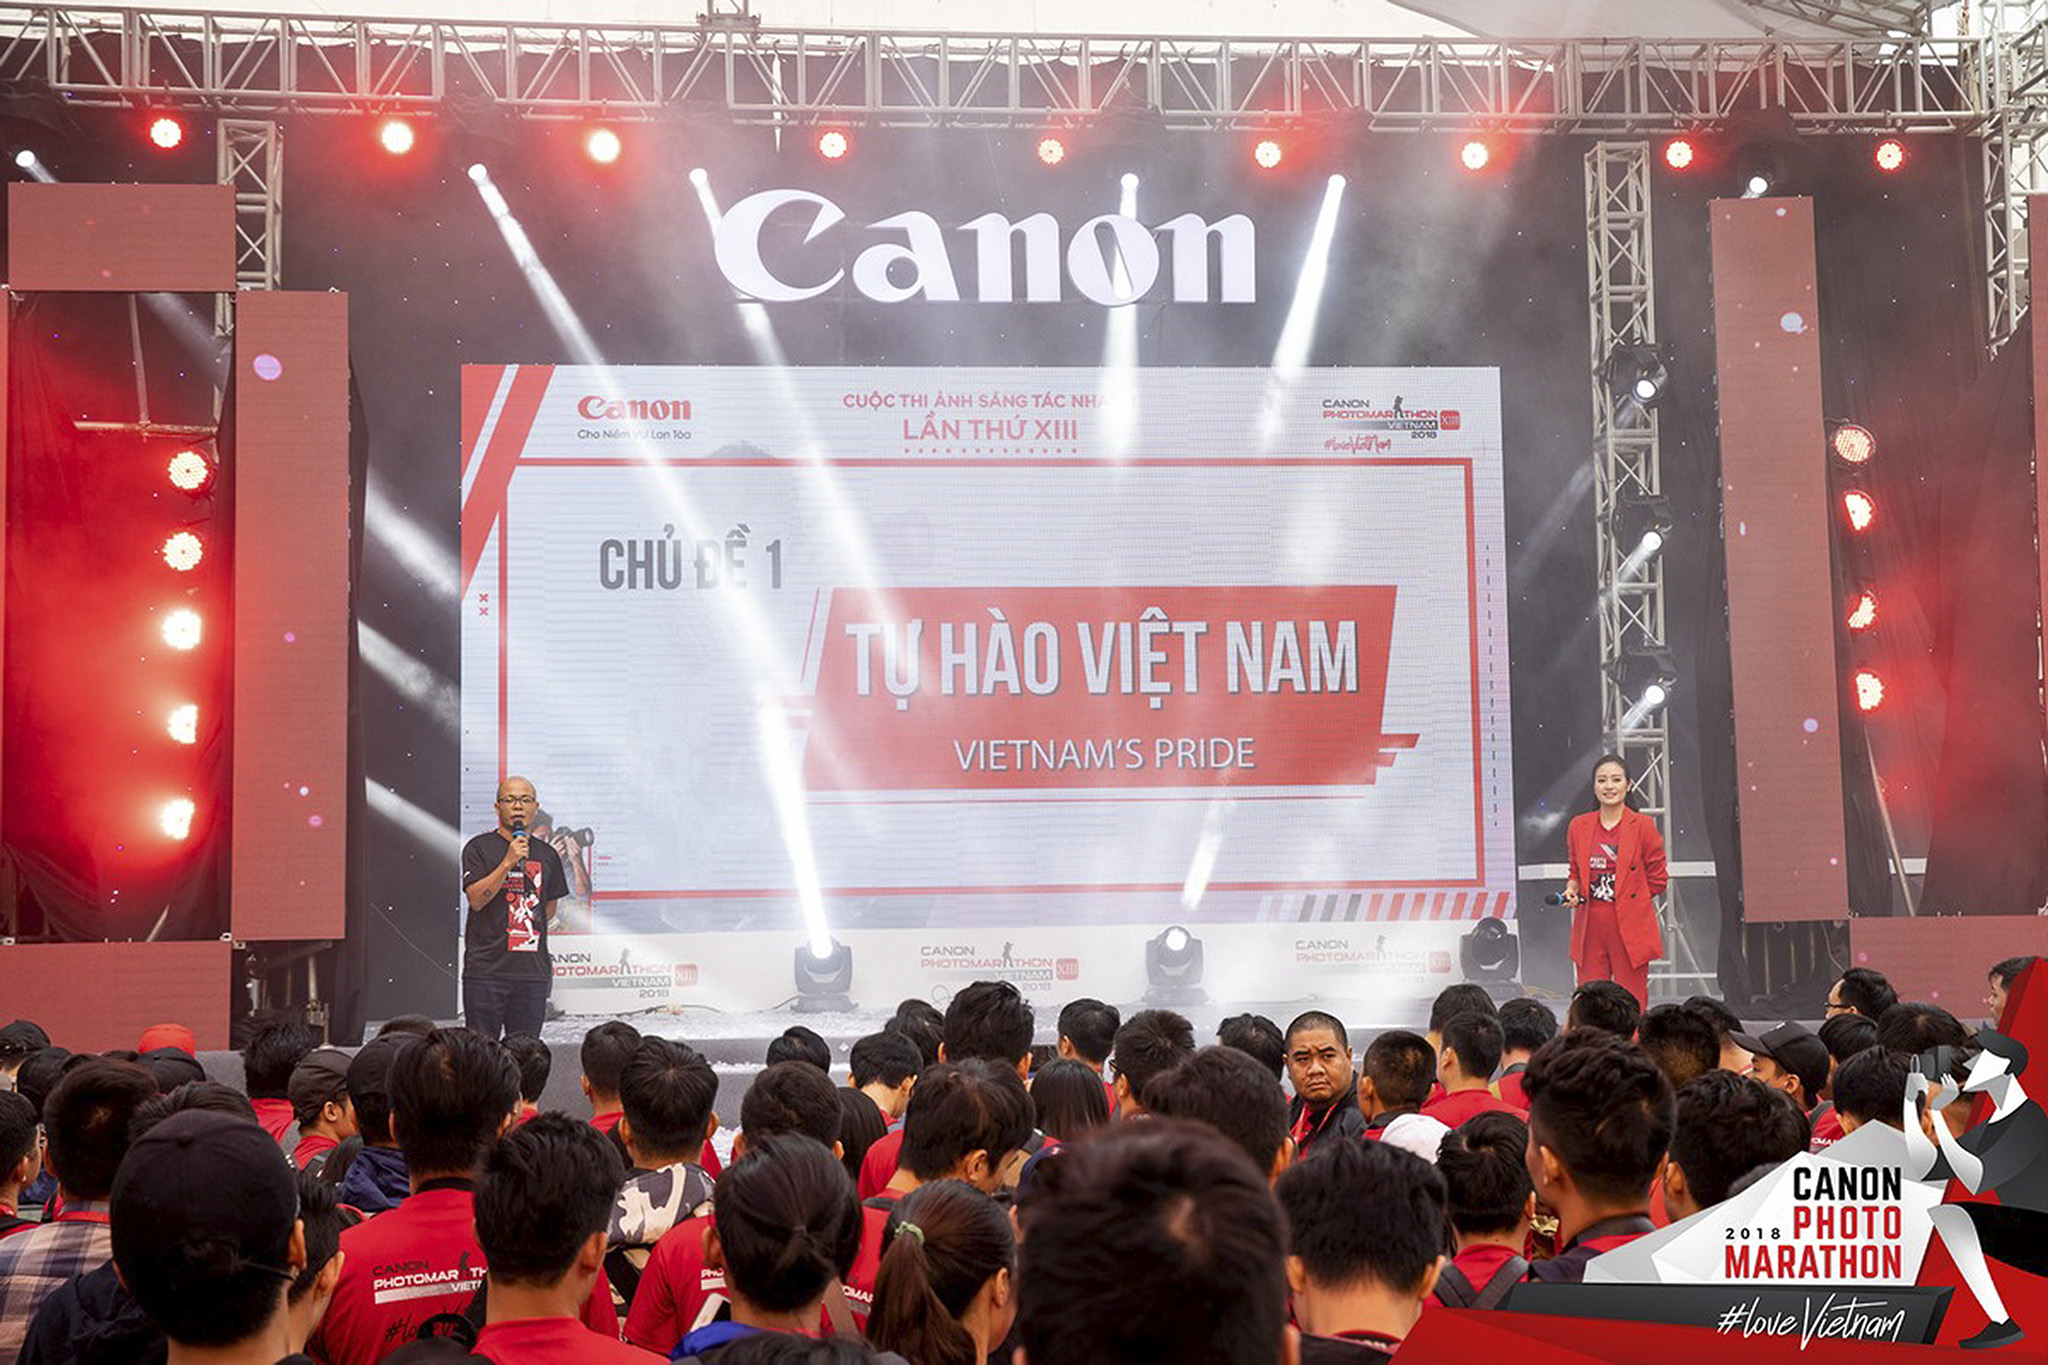 181027 Canon PhotoMarathon Hanoi 2018-09.jpg